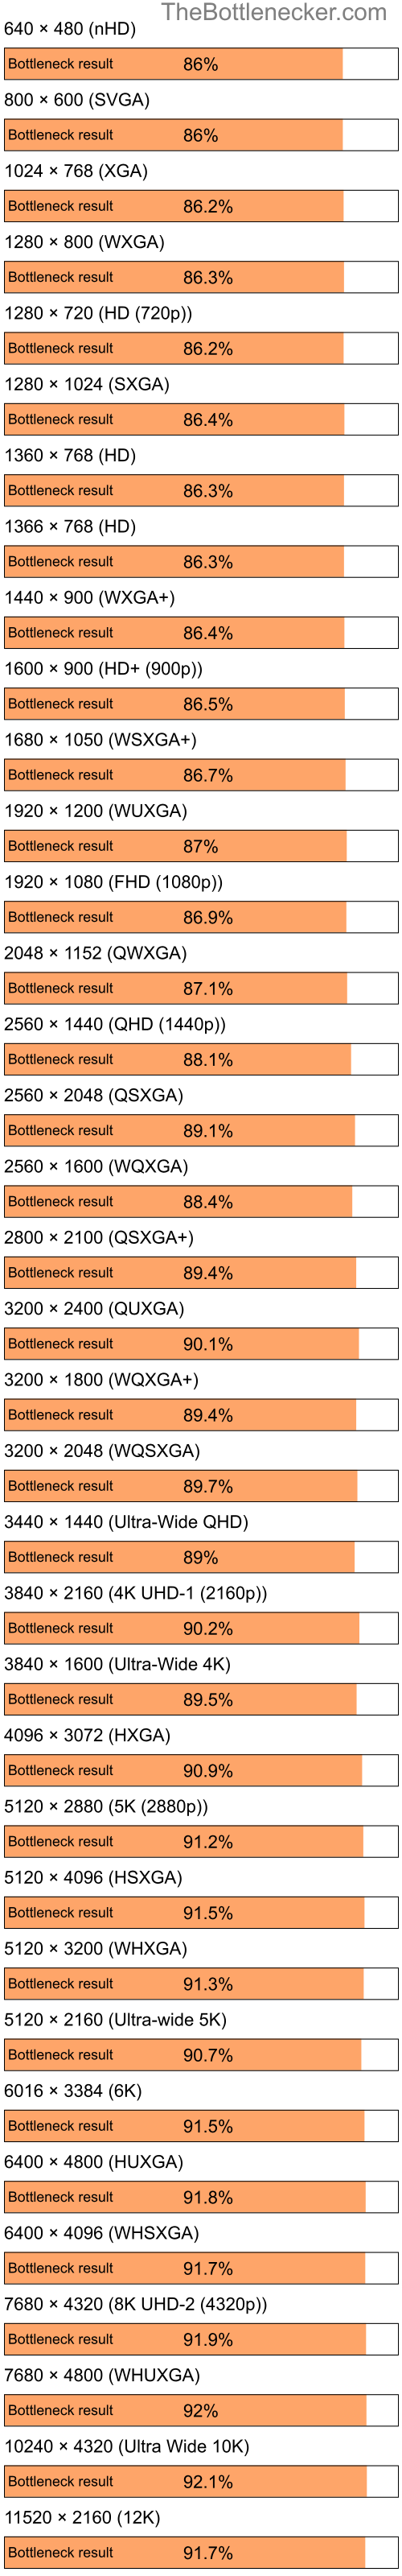 Bottleneck results by resolution for Intel Celeron M 410 and NVIDIA GeForce FX 5200 in General Tasks